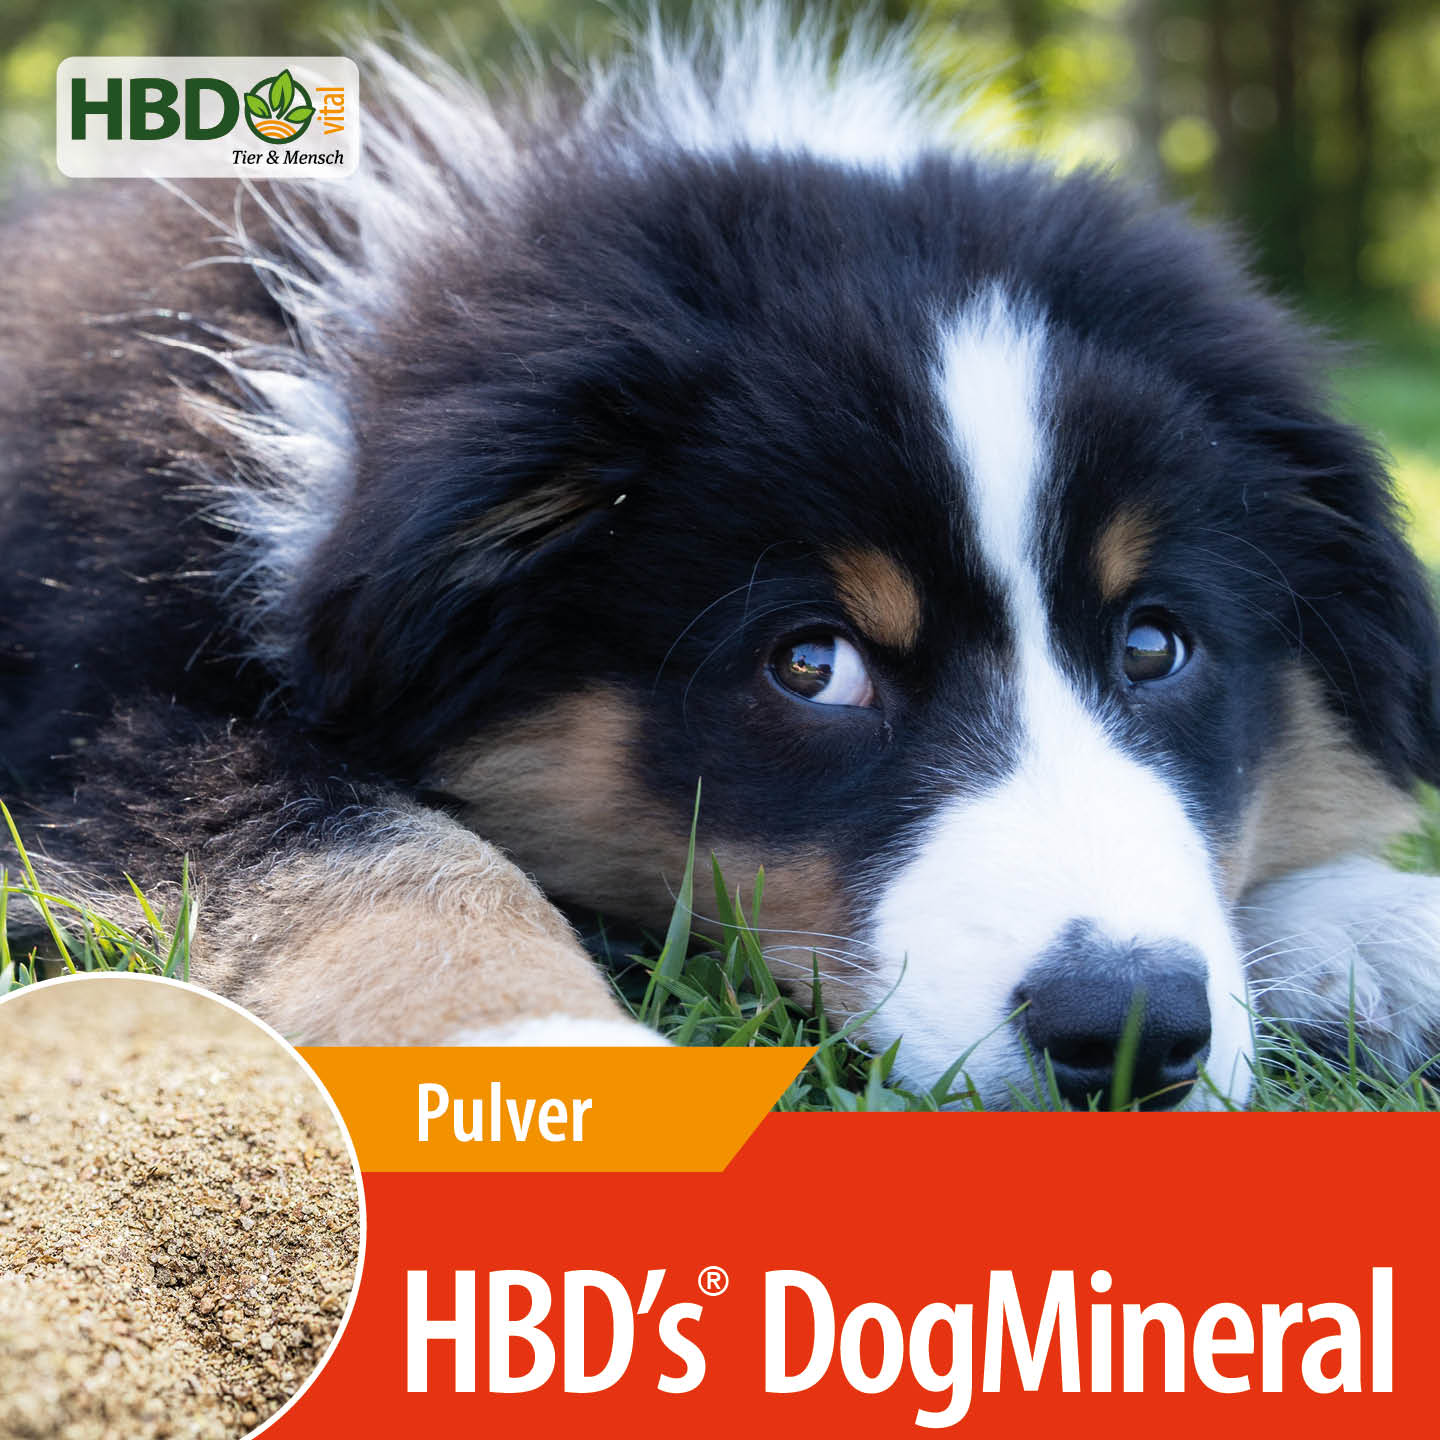 Shopbild für HBD's DogMineral - Das Bild zeigt den Produktnamen sowie den Hinweis, dass es sich um ein Pulver handelt. Ein braun/weiß/schwarzer Hund wird präsentiert.